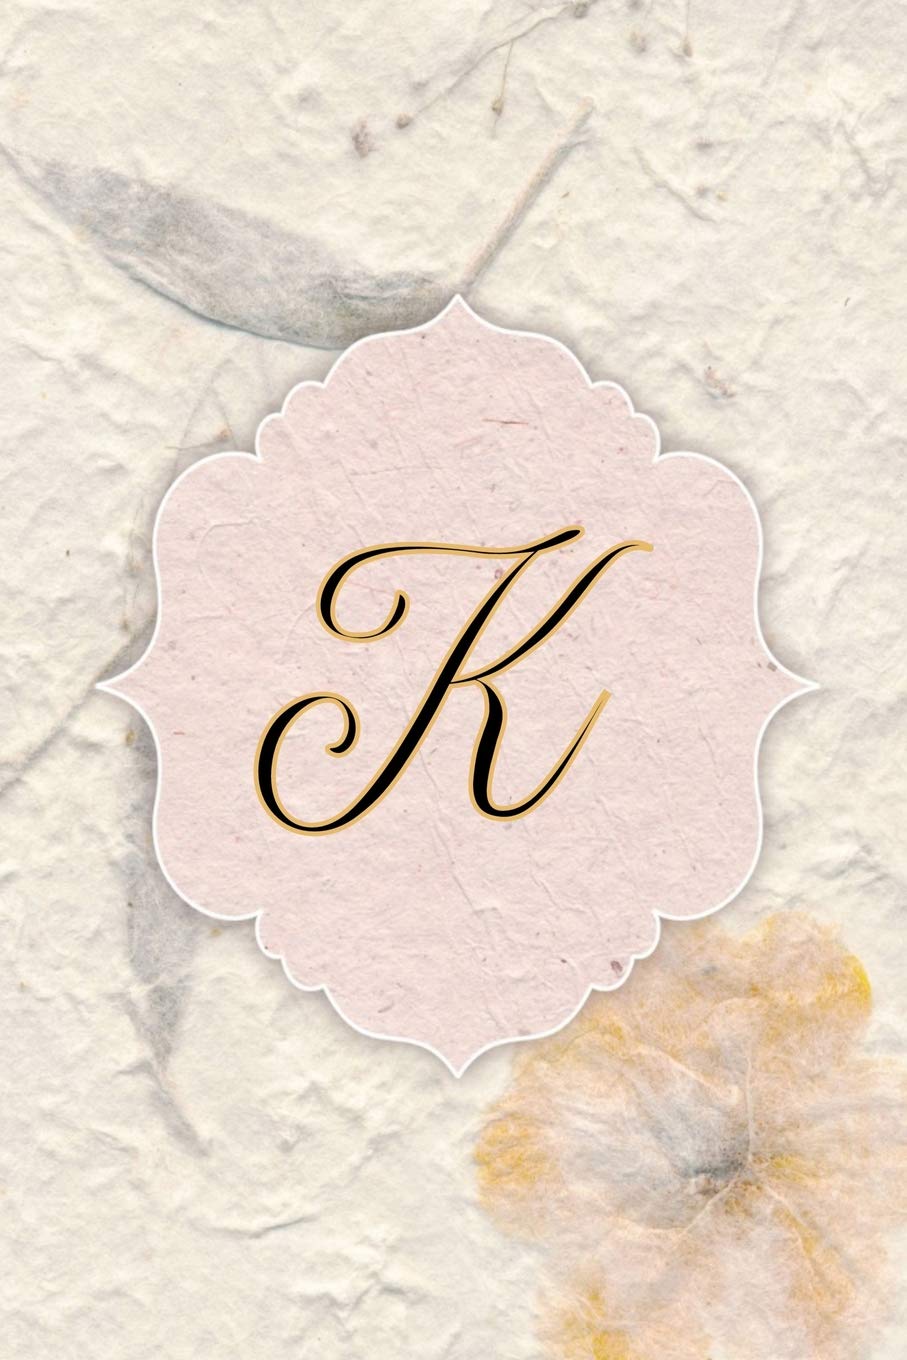 Beautiful Images Of Letter K - KibrisPDR